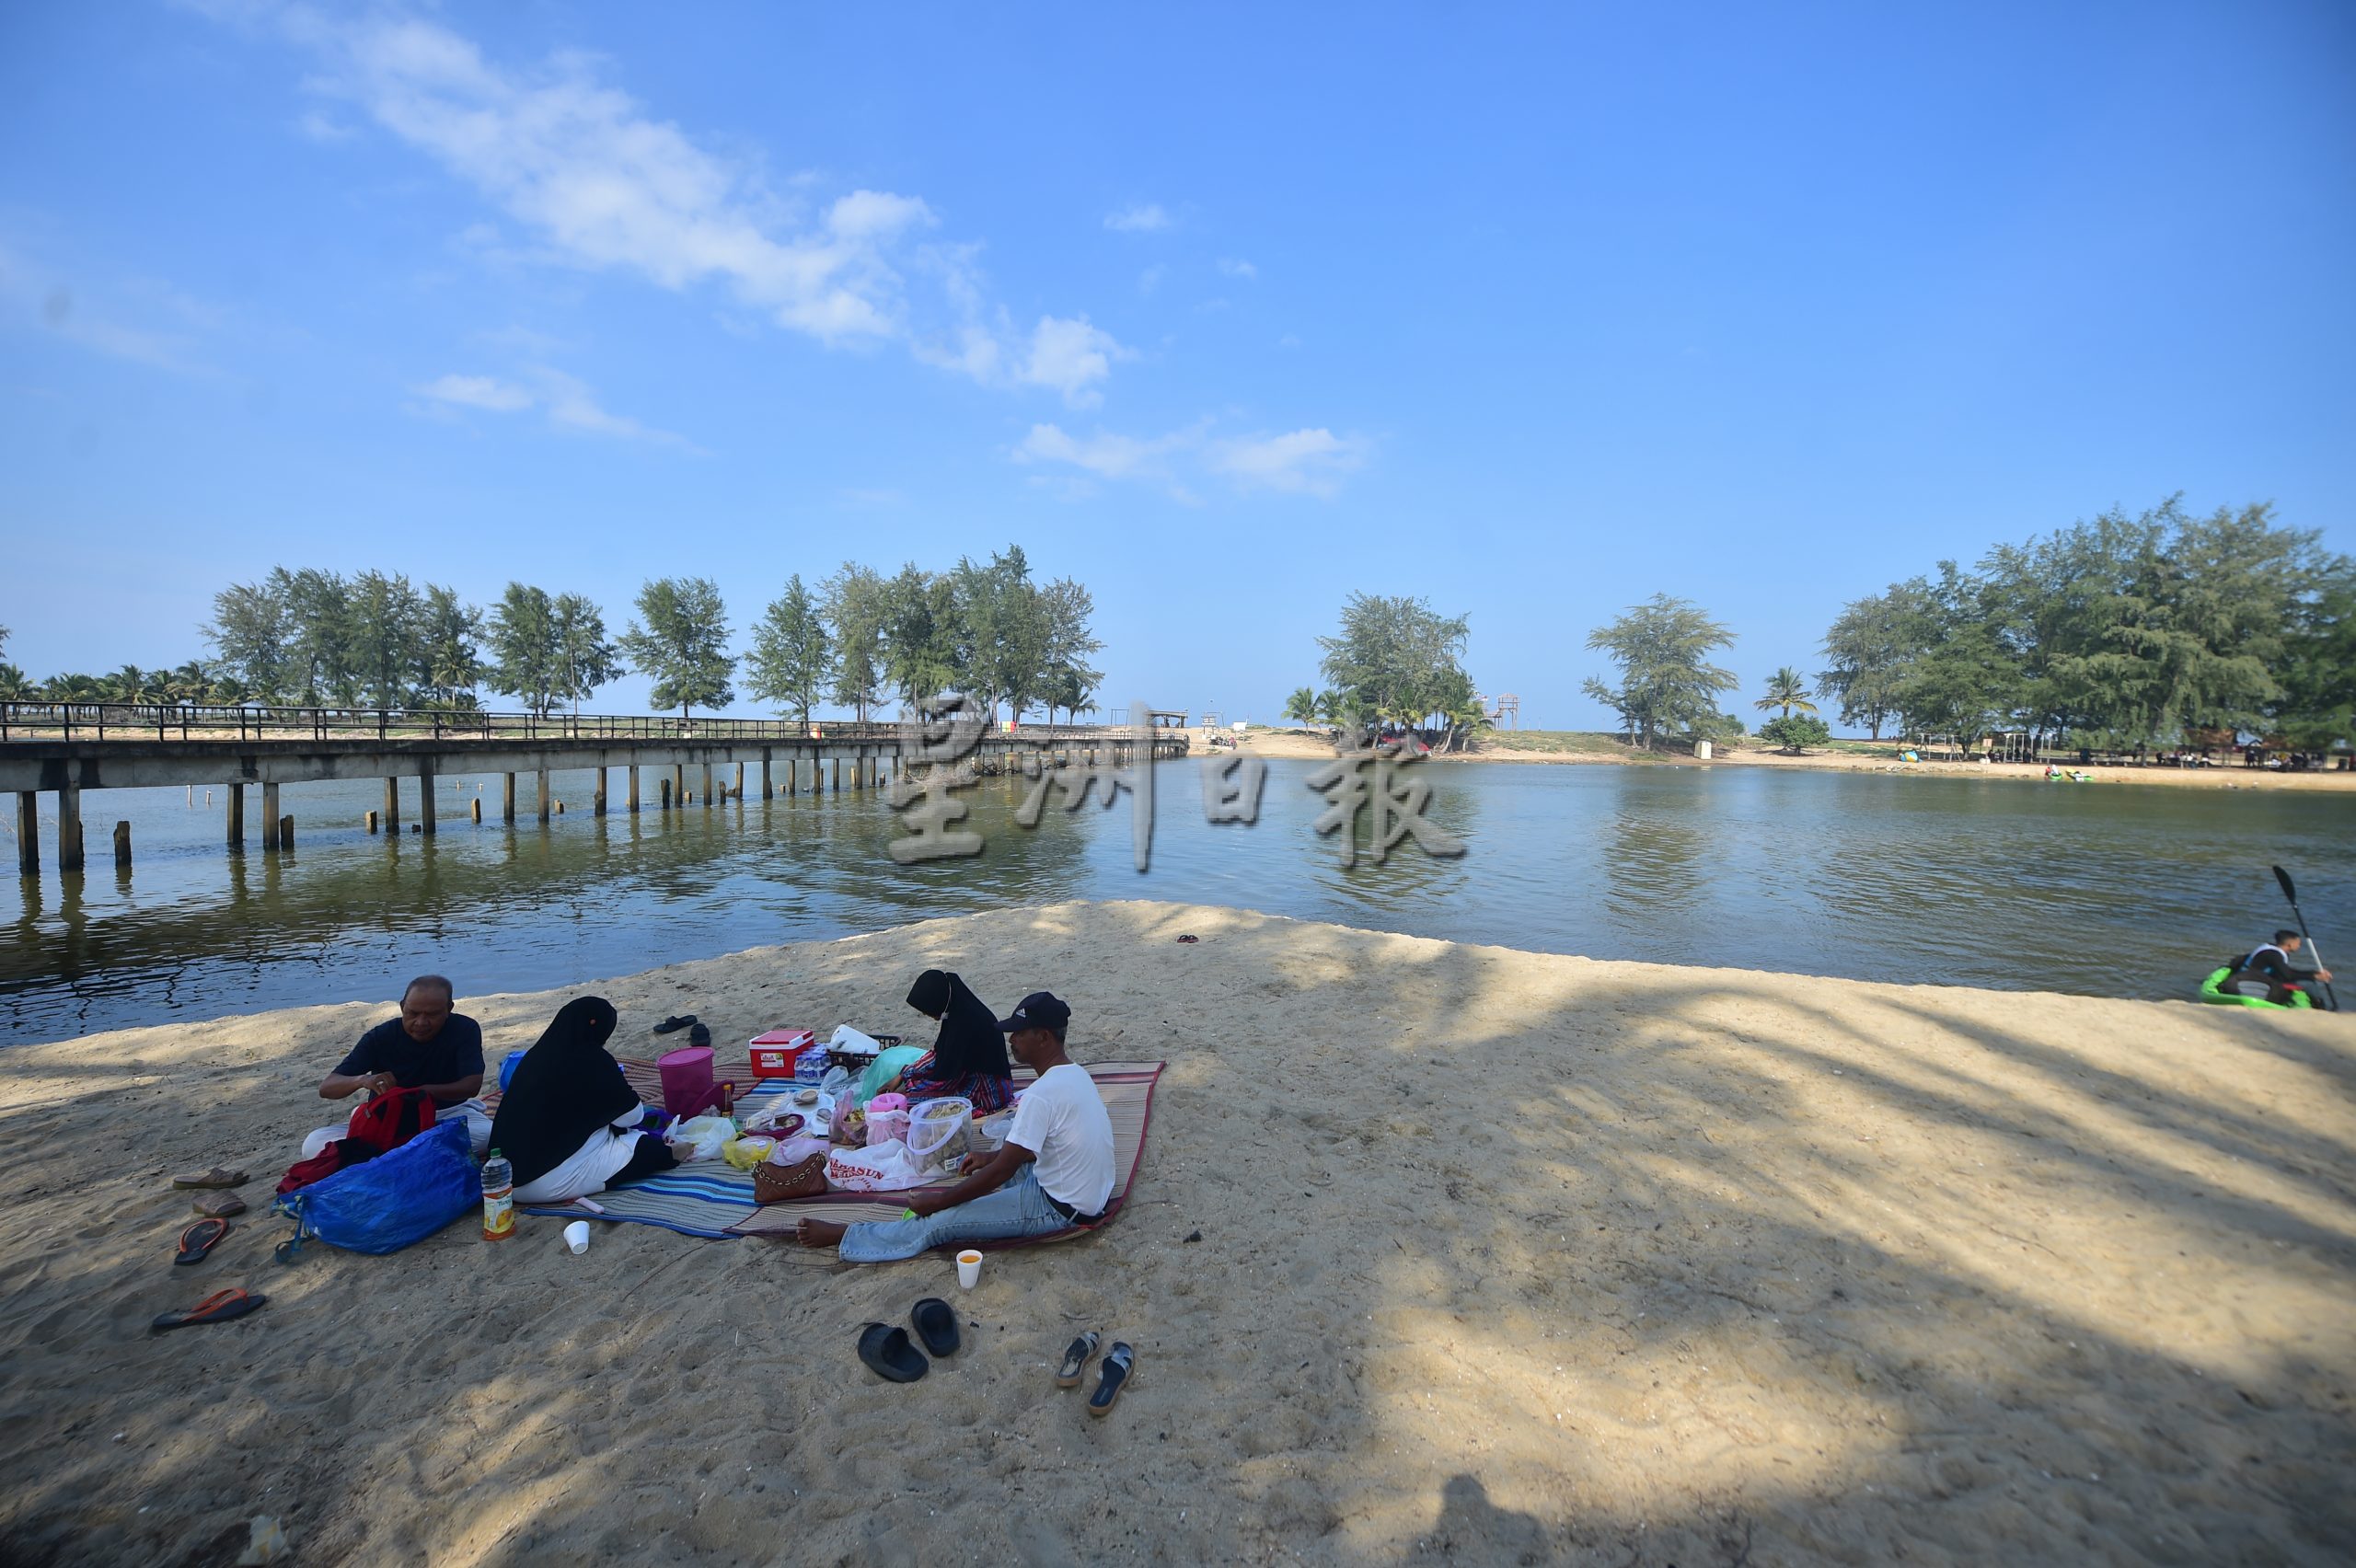 东：登州政府宣布位于墨江的“听风海滩”（Pantai Angin Berbisik）为州内最新的社区旅游景点，适合一家大小进行休闲观光活动。